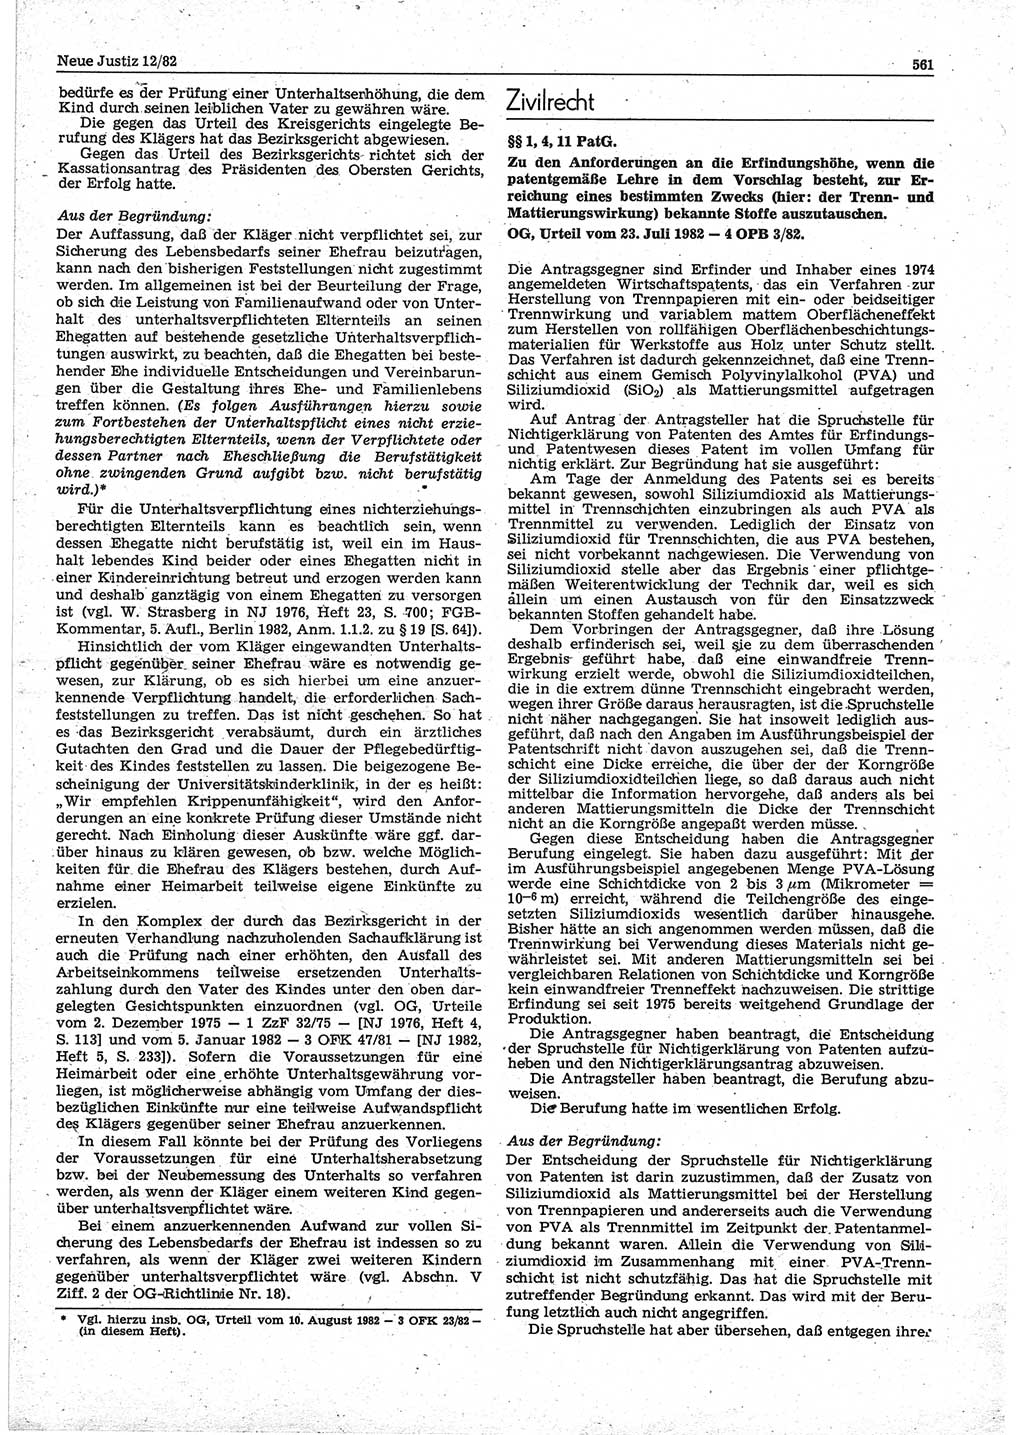 Neue Justiz (NJ), Zeitschrift für sozialistisches Recht und Gesetzlichkeit [Deutsche Demokratische Republik (DDR)], 36. Jahrgang 1982, Seite 561 (NJ DDR 1982, S. 561)